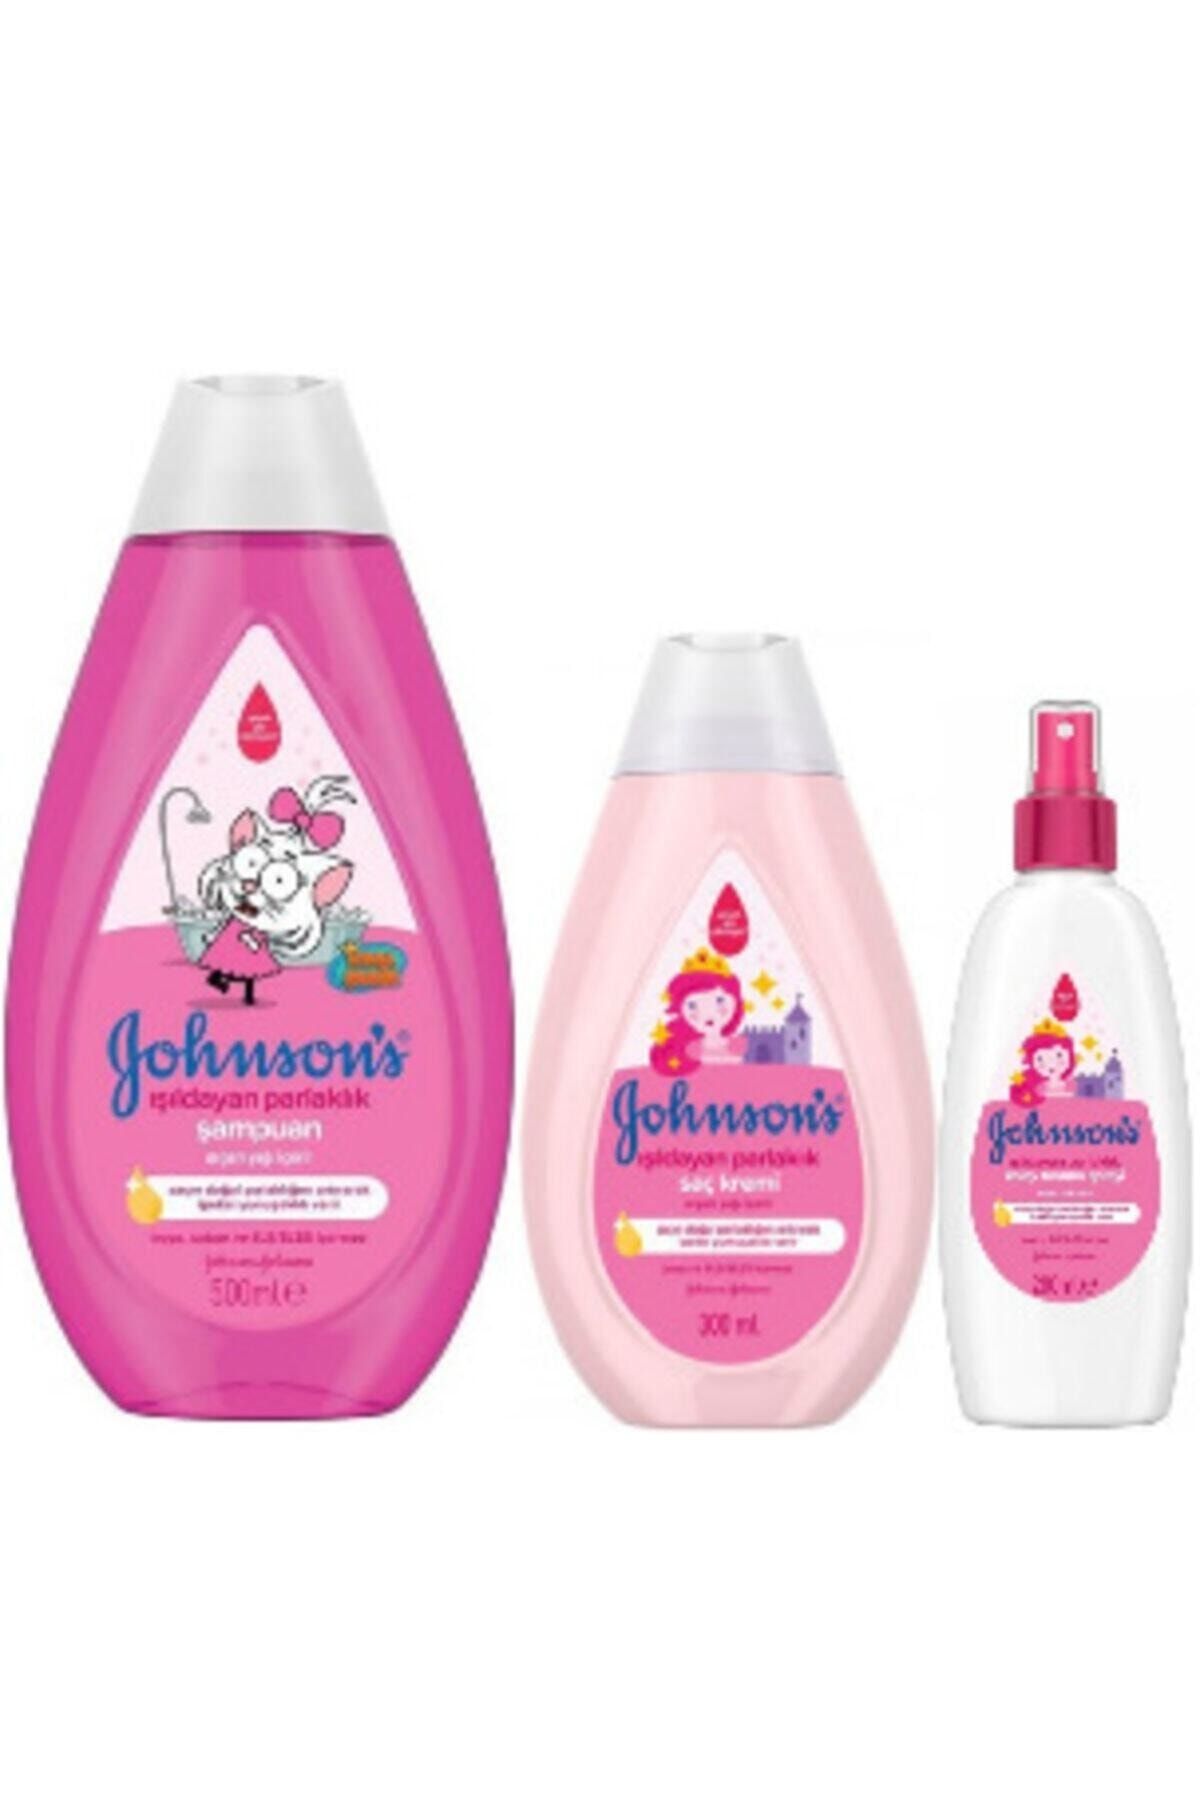 Johnson's Işıldayan Parlaklık Seti Şampuan 500 ml, Saç Kremi 300 ml, Kolay Tarama Spreyi 200 ml